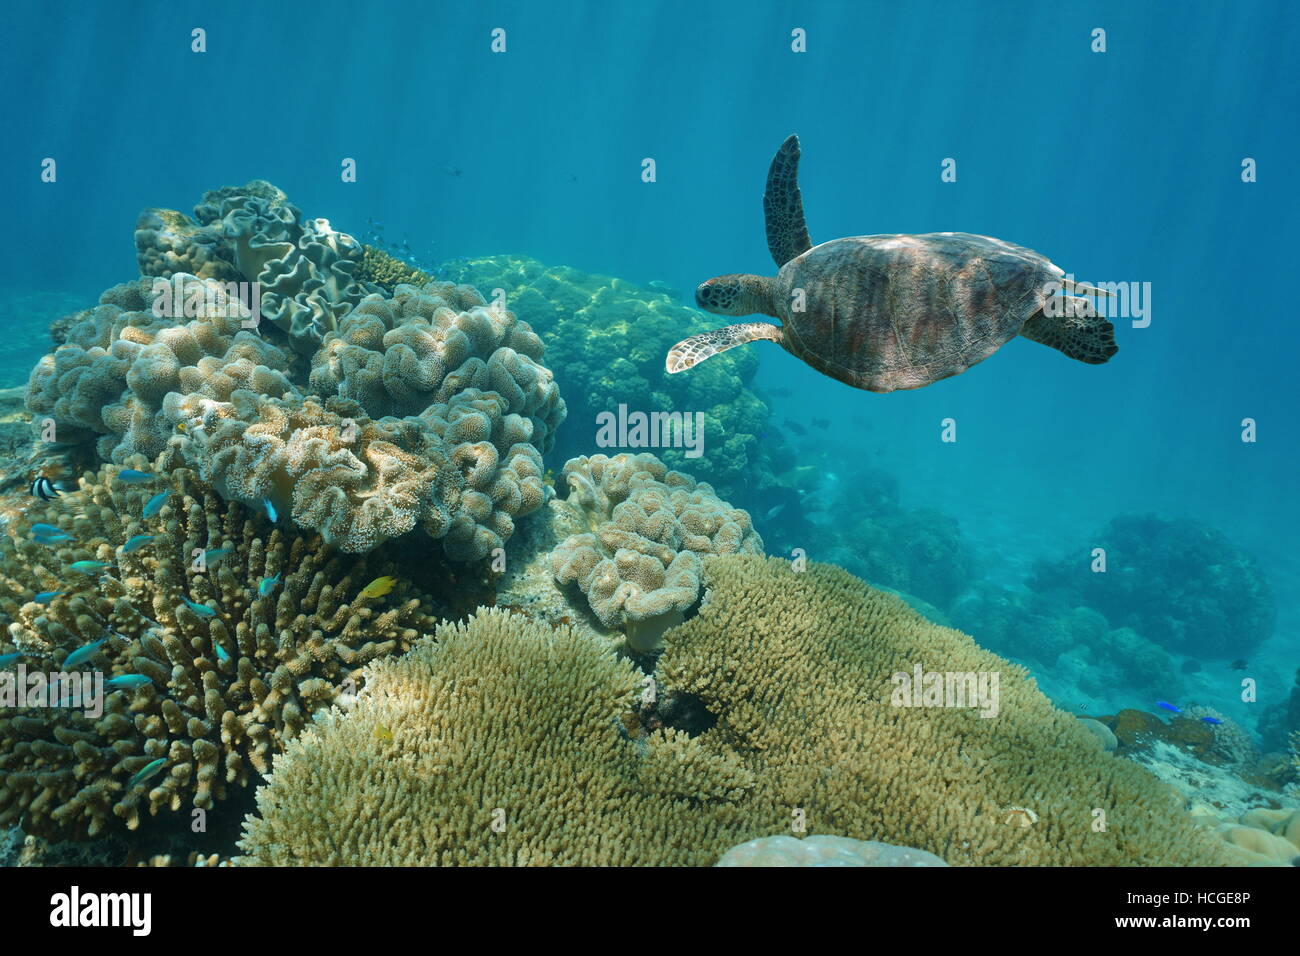 Una tartaruga verde subacquei con coralli, Nuova Caledonia, oceano pacifico del sud Foto Stock